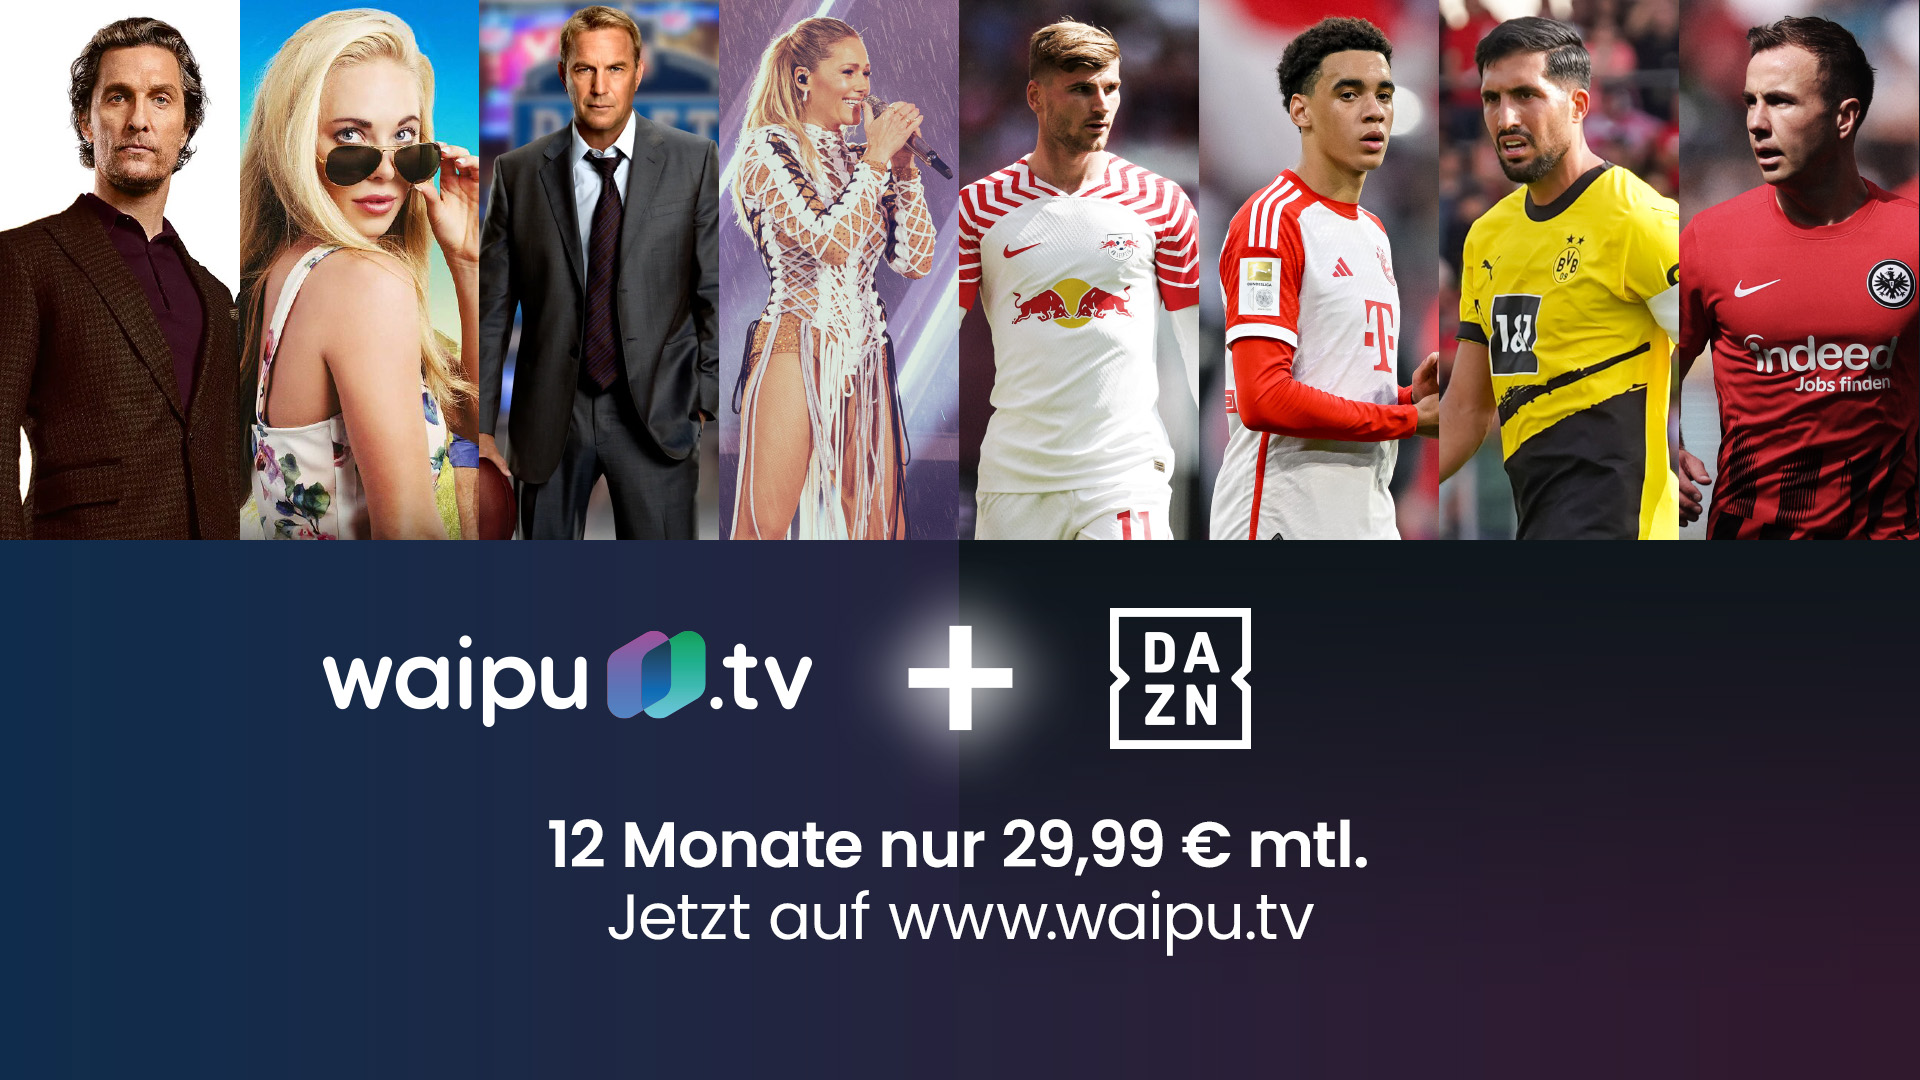 waipu.tv launcht neues DAZN UNLIMITED-Angebot mit 25 Prozent Rabatt